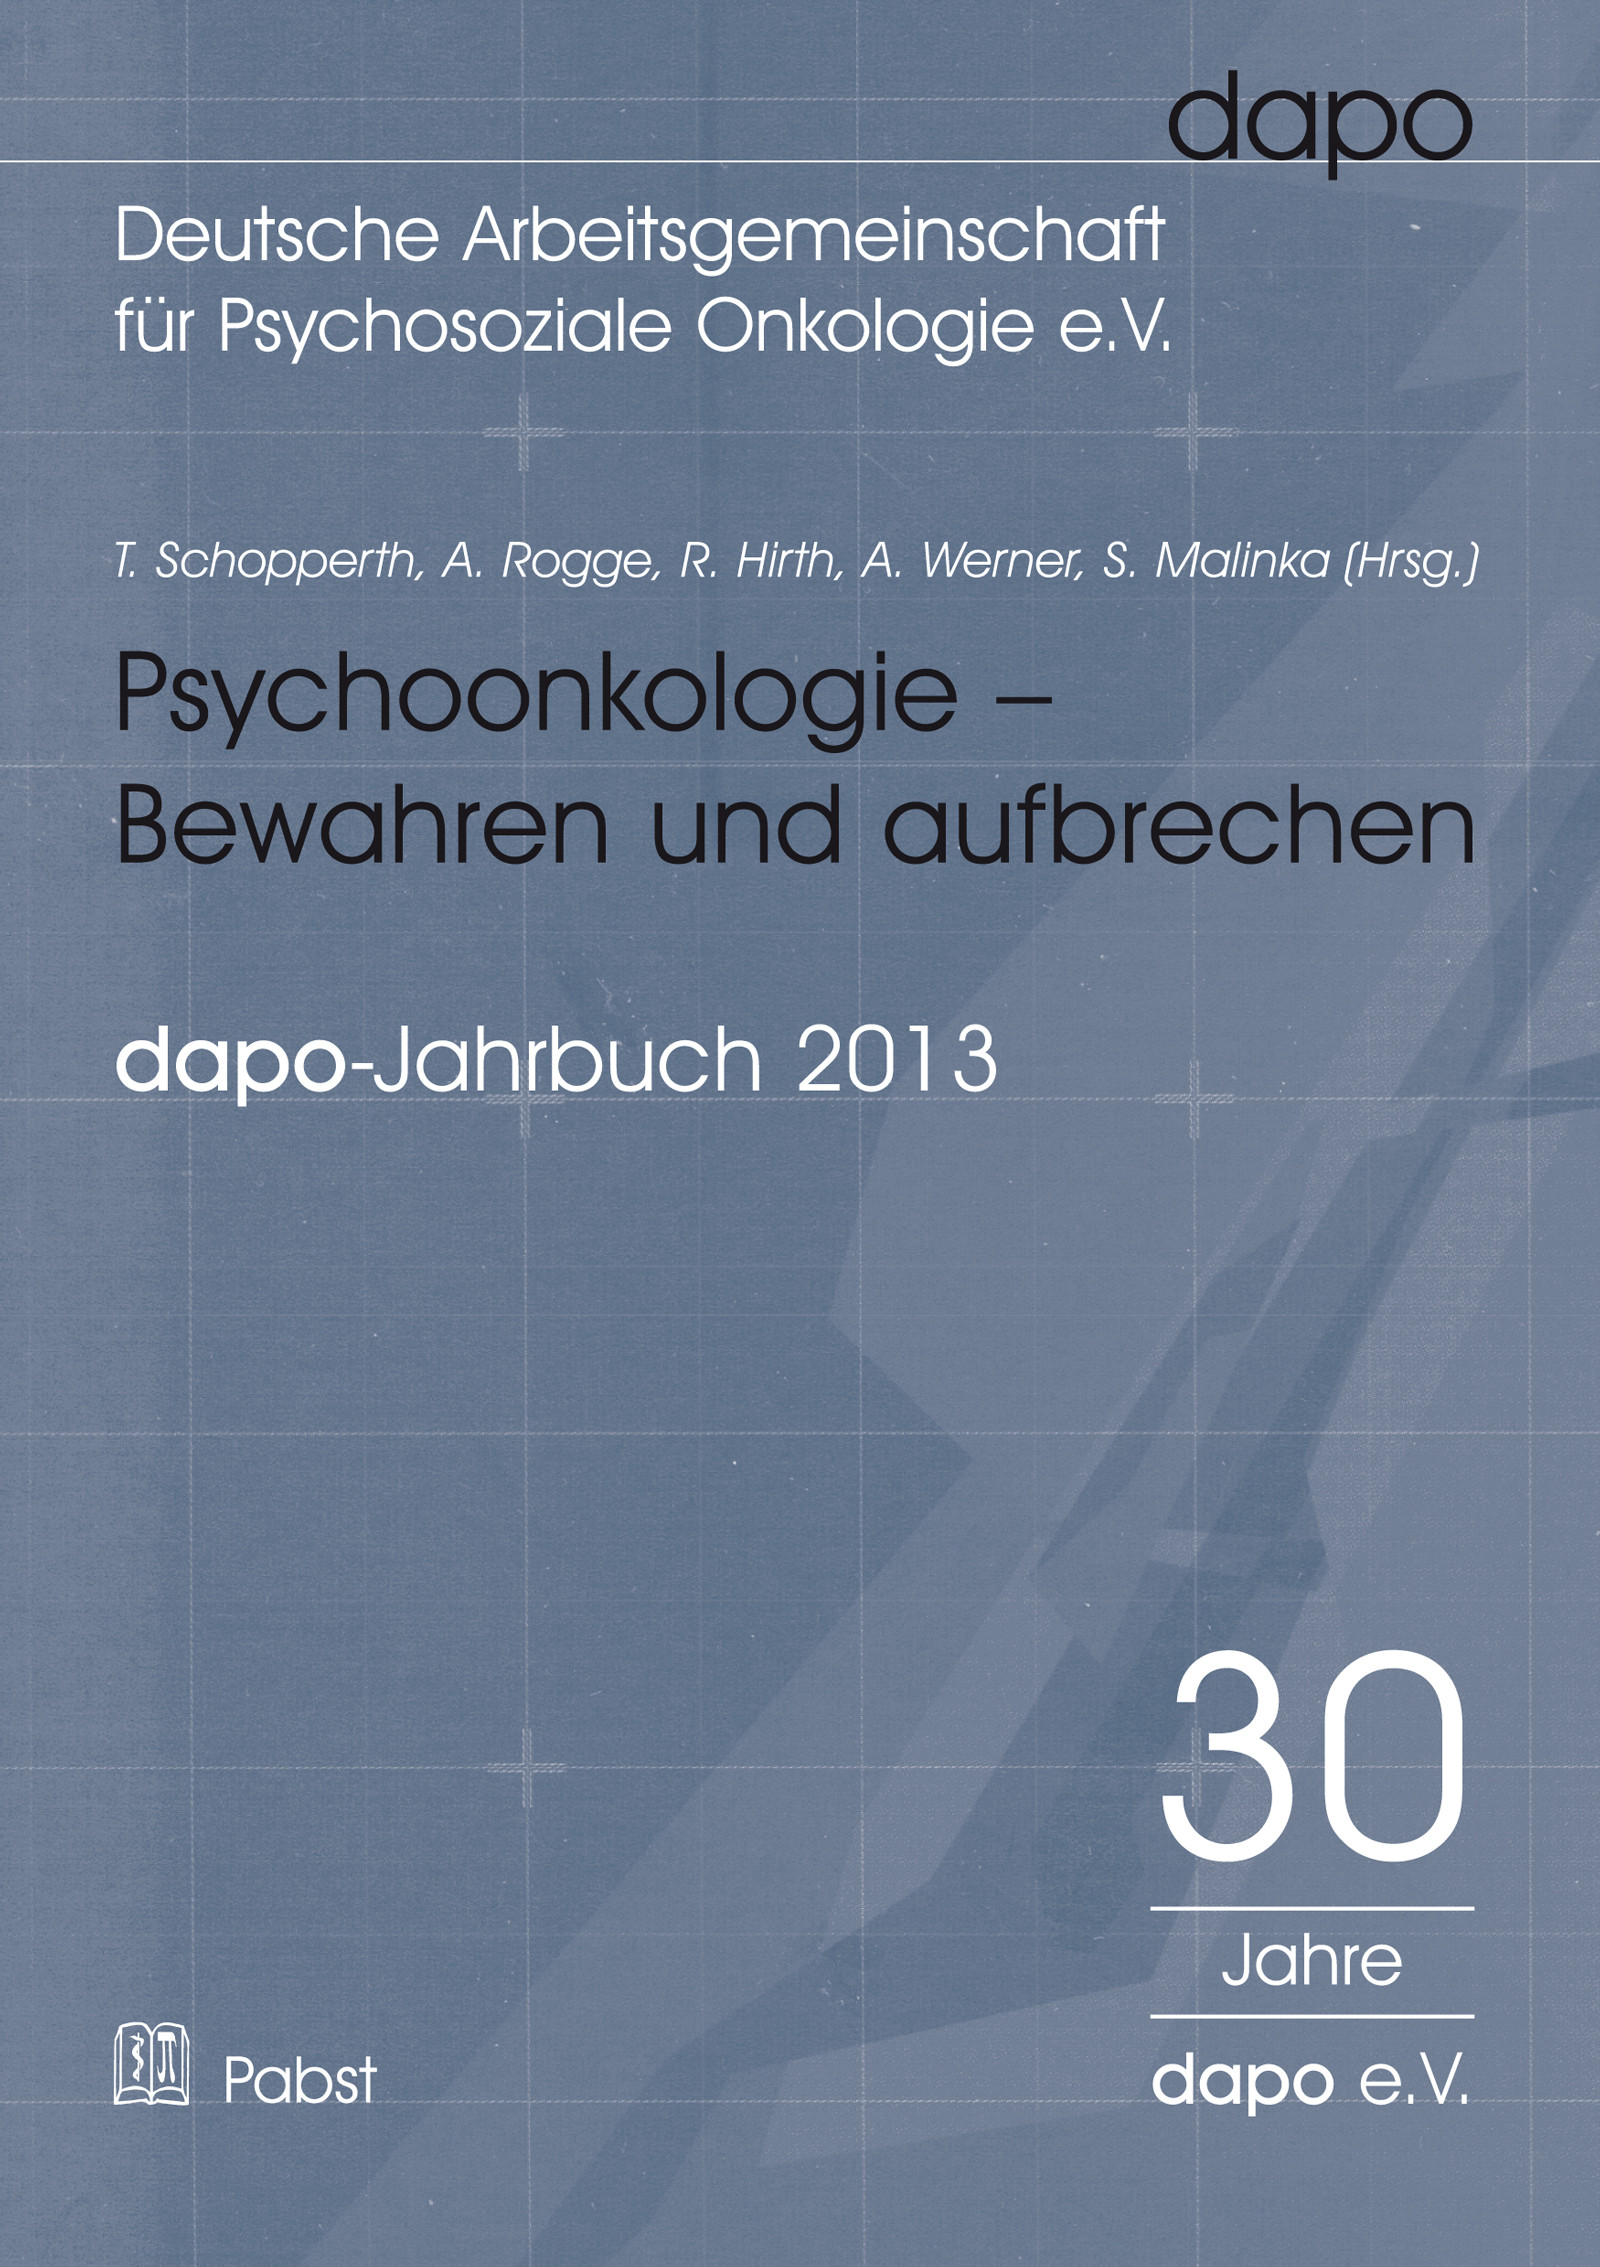 Psychoonkologie – Bewahren und aufbrechen. Bericht der dapo-Jahrestagung 2013